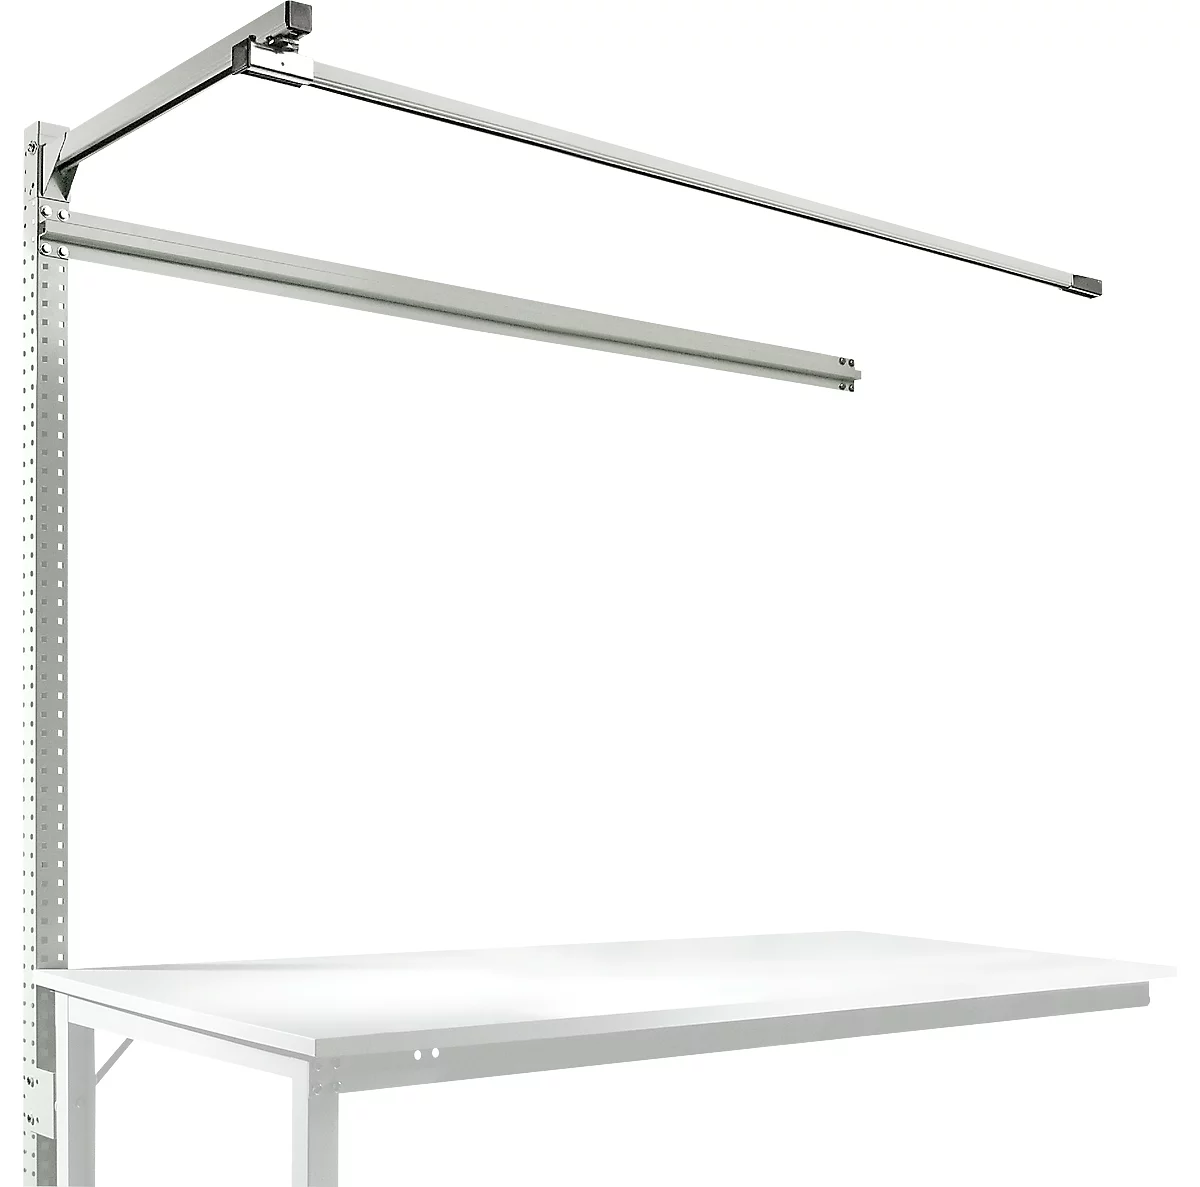 Estructura pórtica adicional con brazo saliente, Mesa de extensión SPEZIAL mesa de trabajo/banco de trabajo UNIVERSAL/PROFI, 1750 mm, gris luminoso